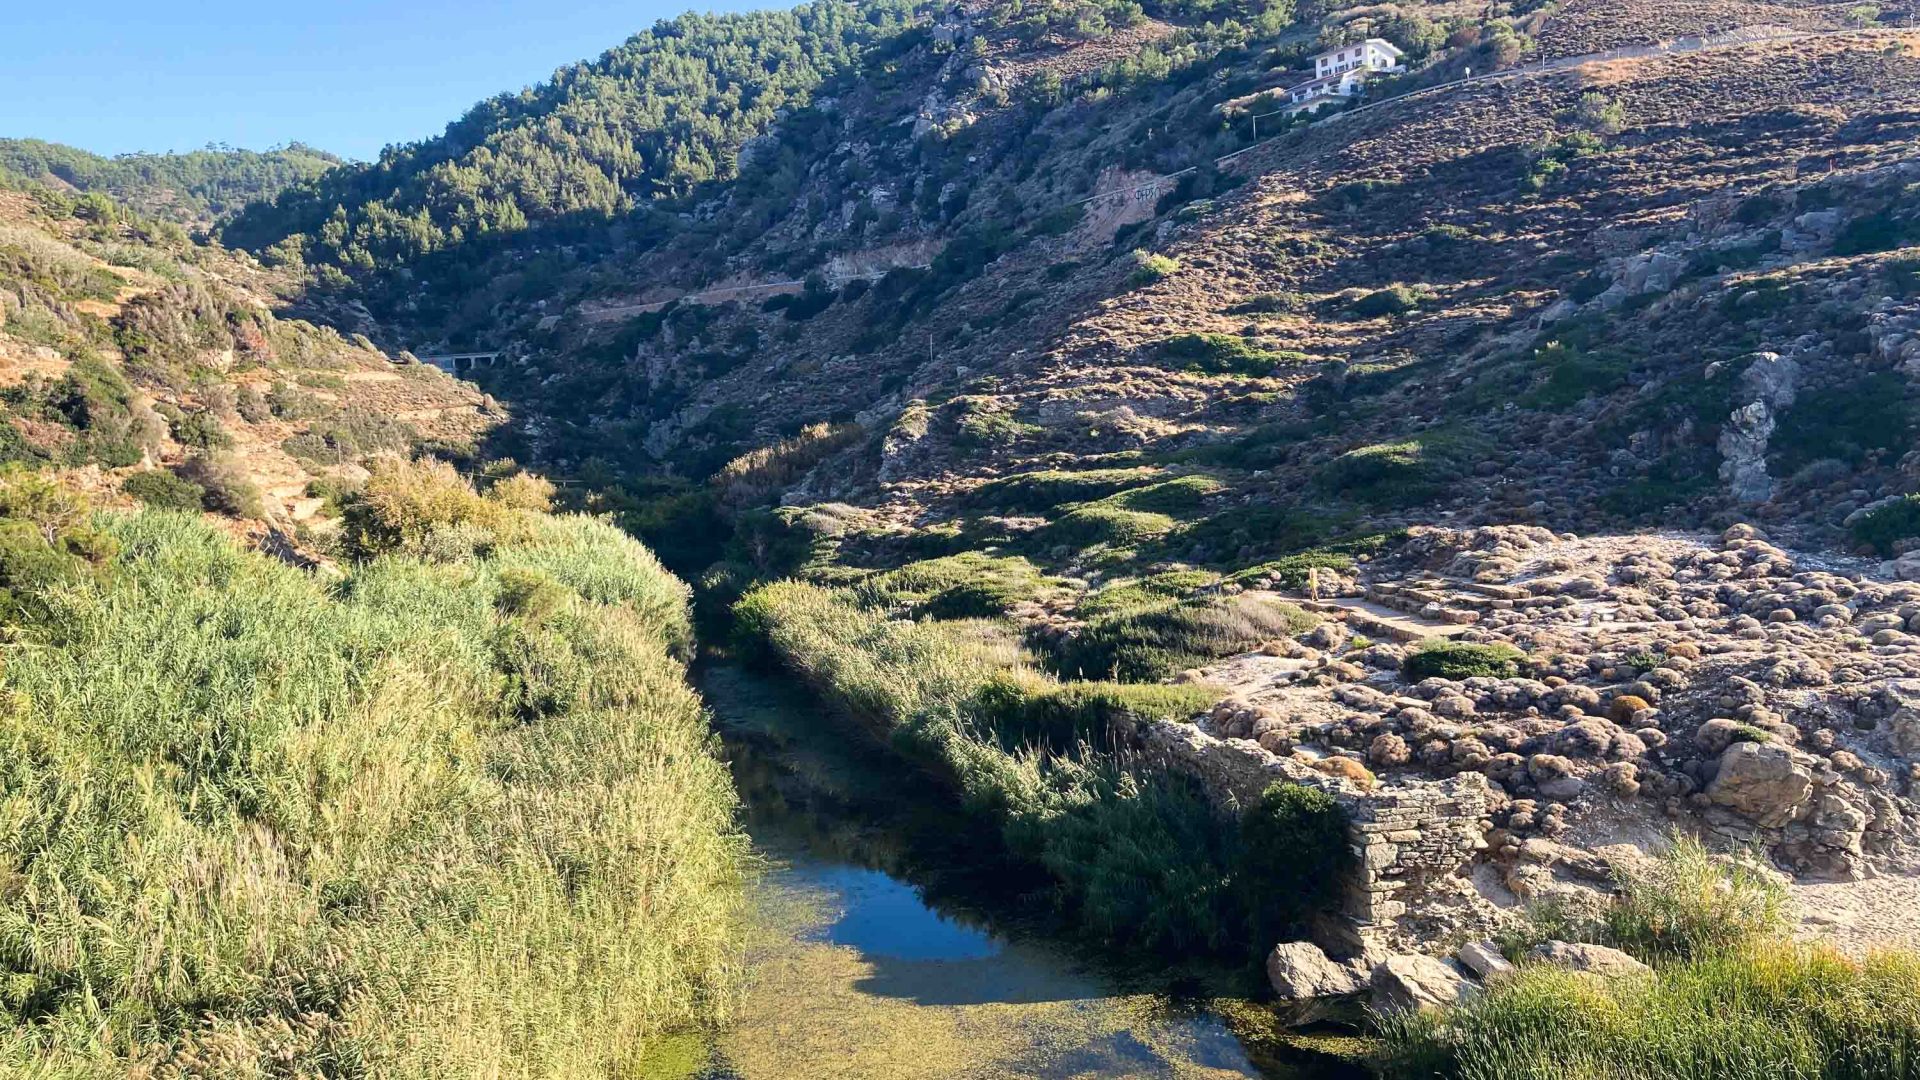 A river through the valley.